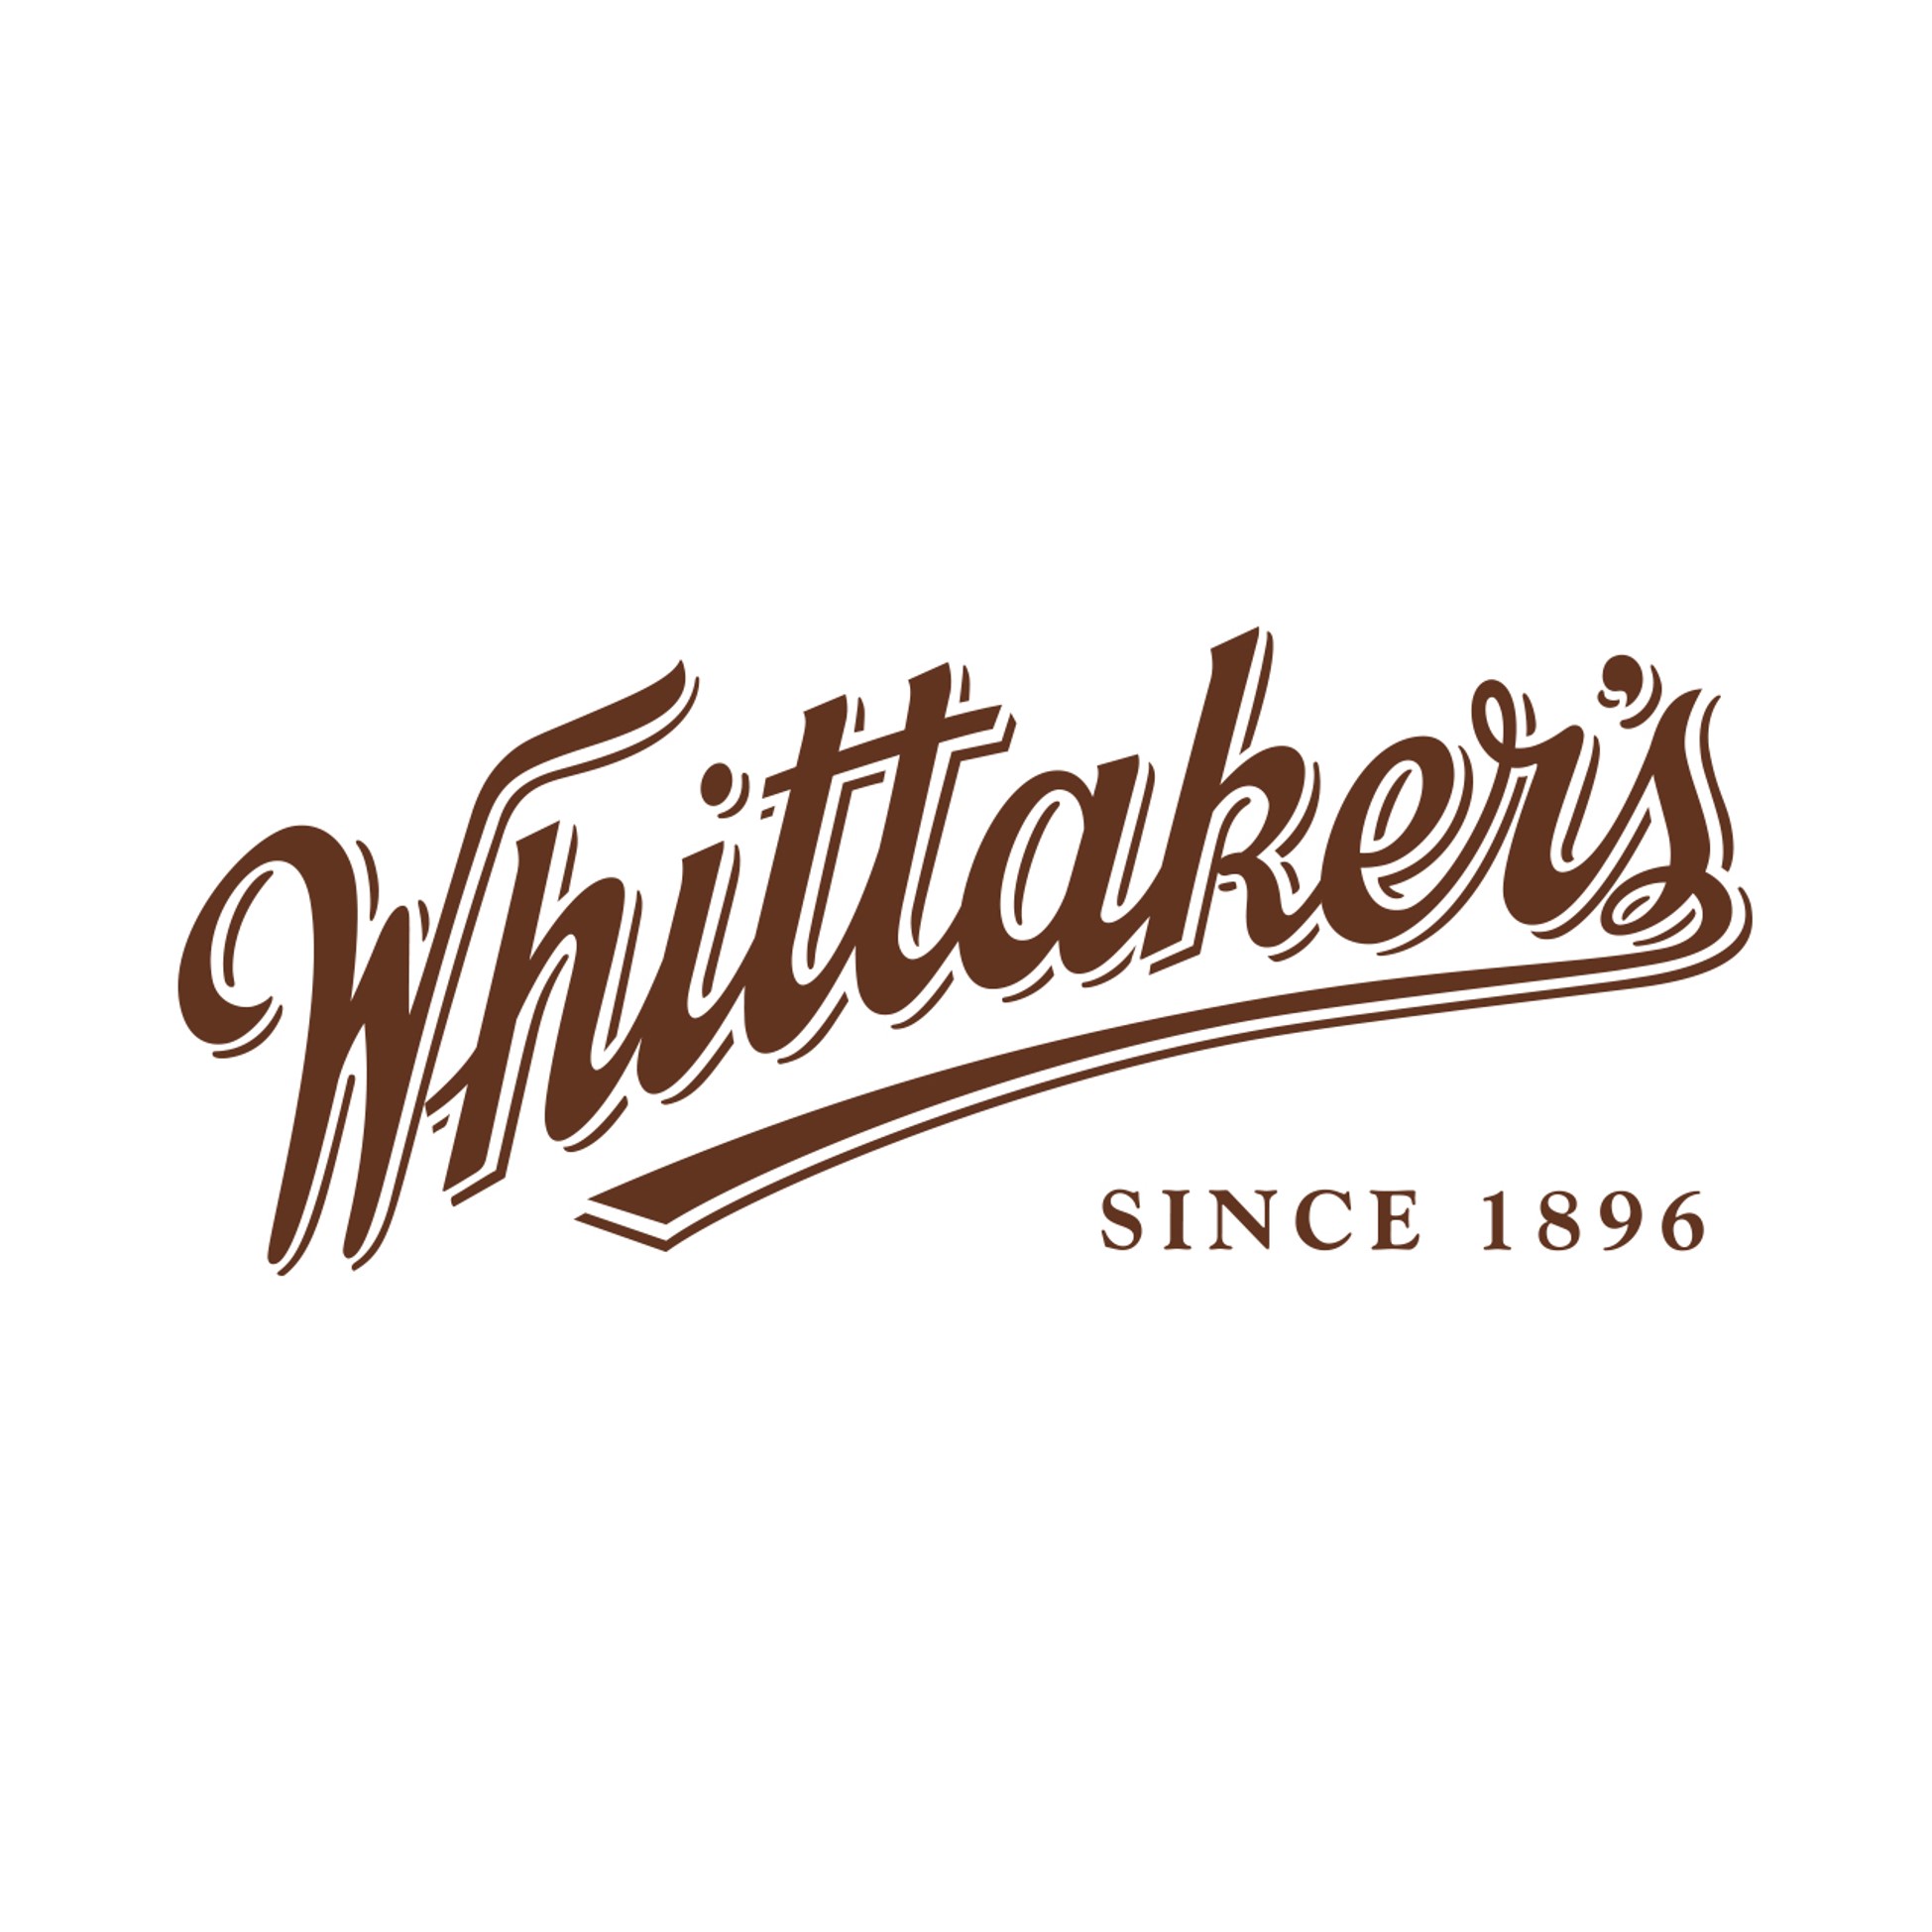 Whittaker’s